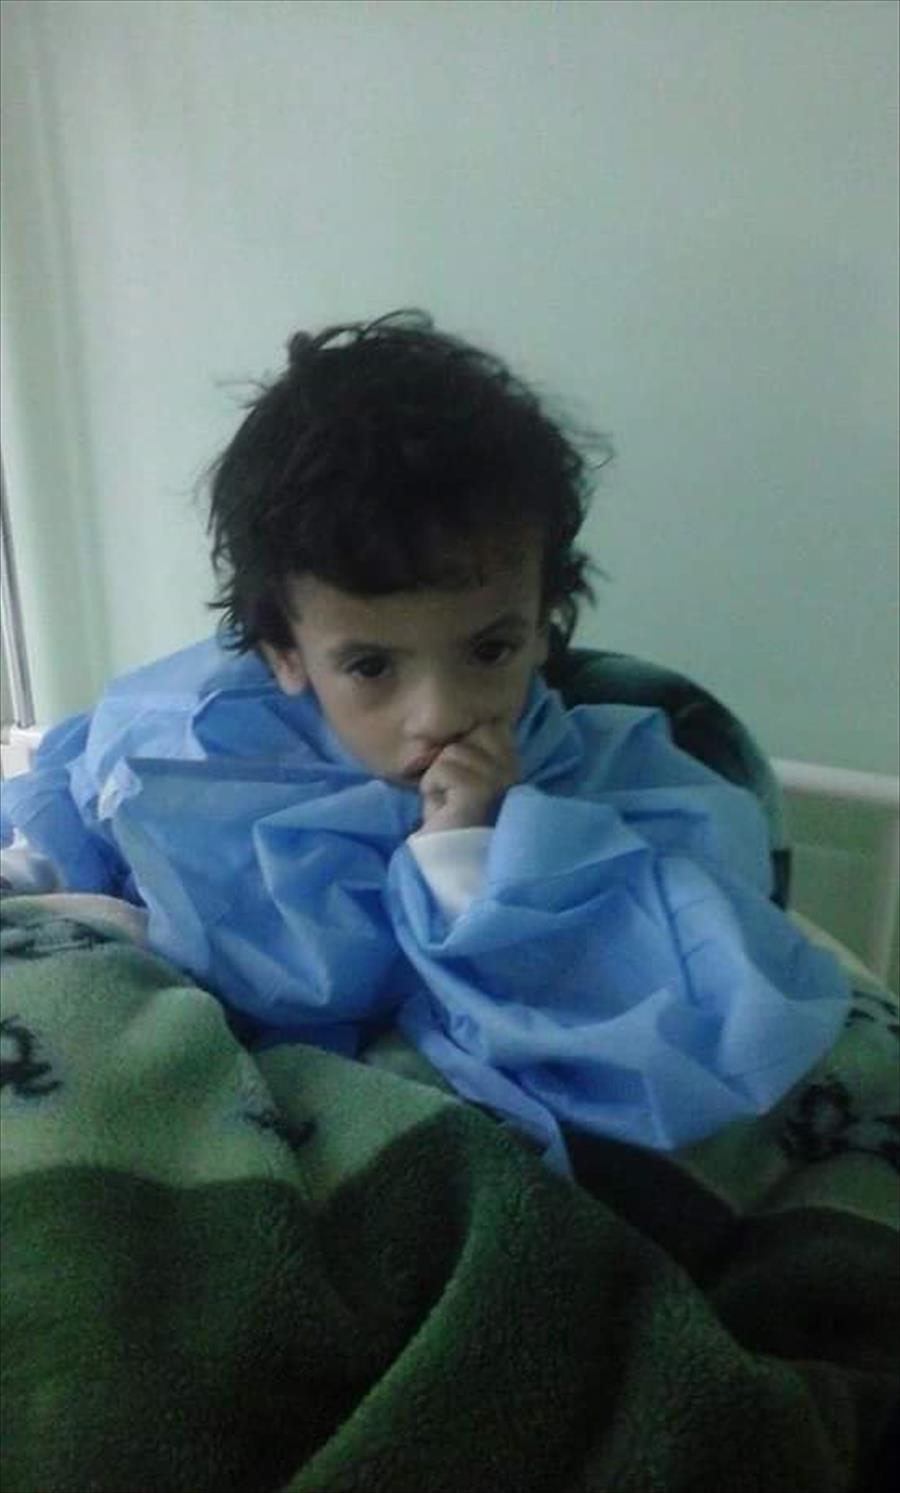 مستشفى أطفال بنغازي تستغيث: لا يوجد دواء والأطفال يموتون